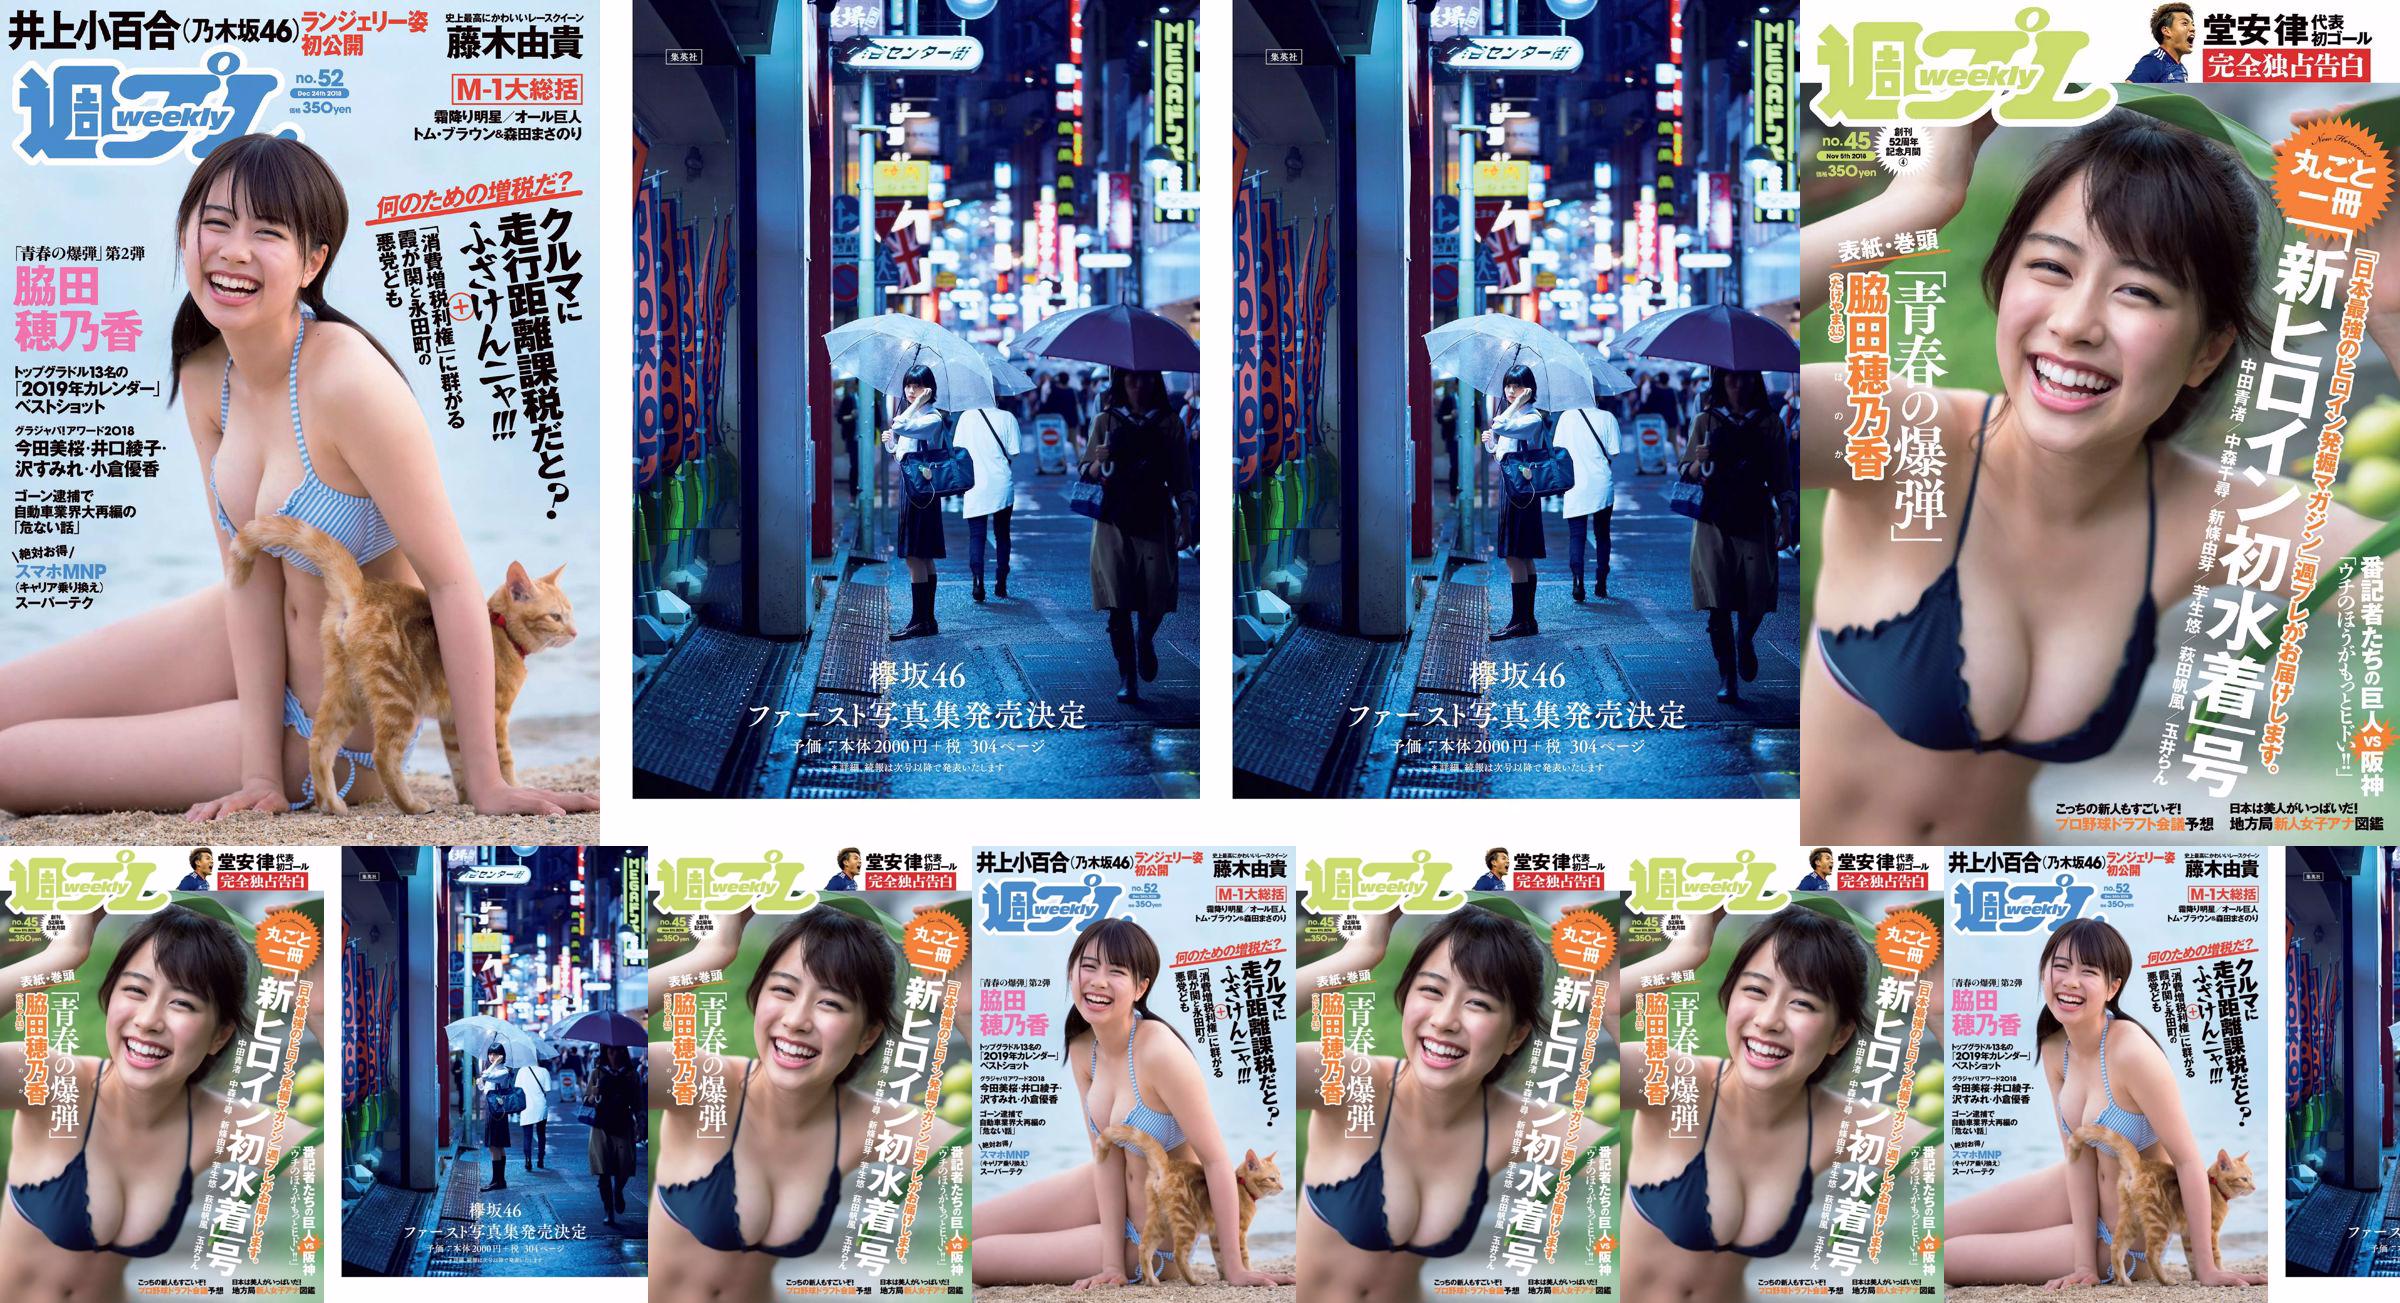 Wakada Honoka, Inoue Sayuri, Mizusawa Yuno, Fujiki Yuki, Koizumi Haruka, Kaito みらい, Tachiki Ayano [Weekly Playboy] 2018 No.52 Photo Magazine No.9e6f88 Page 3